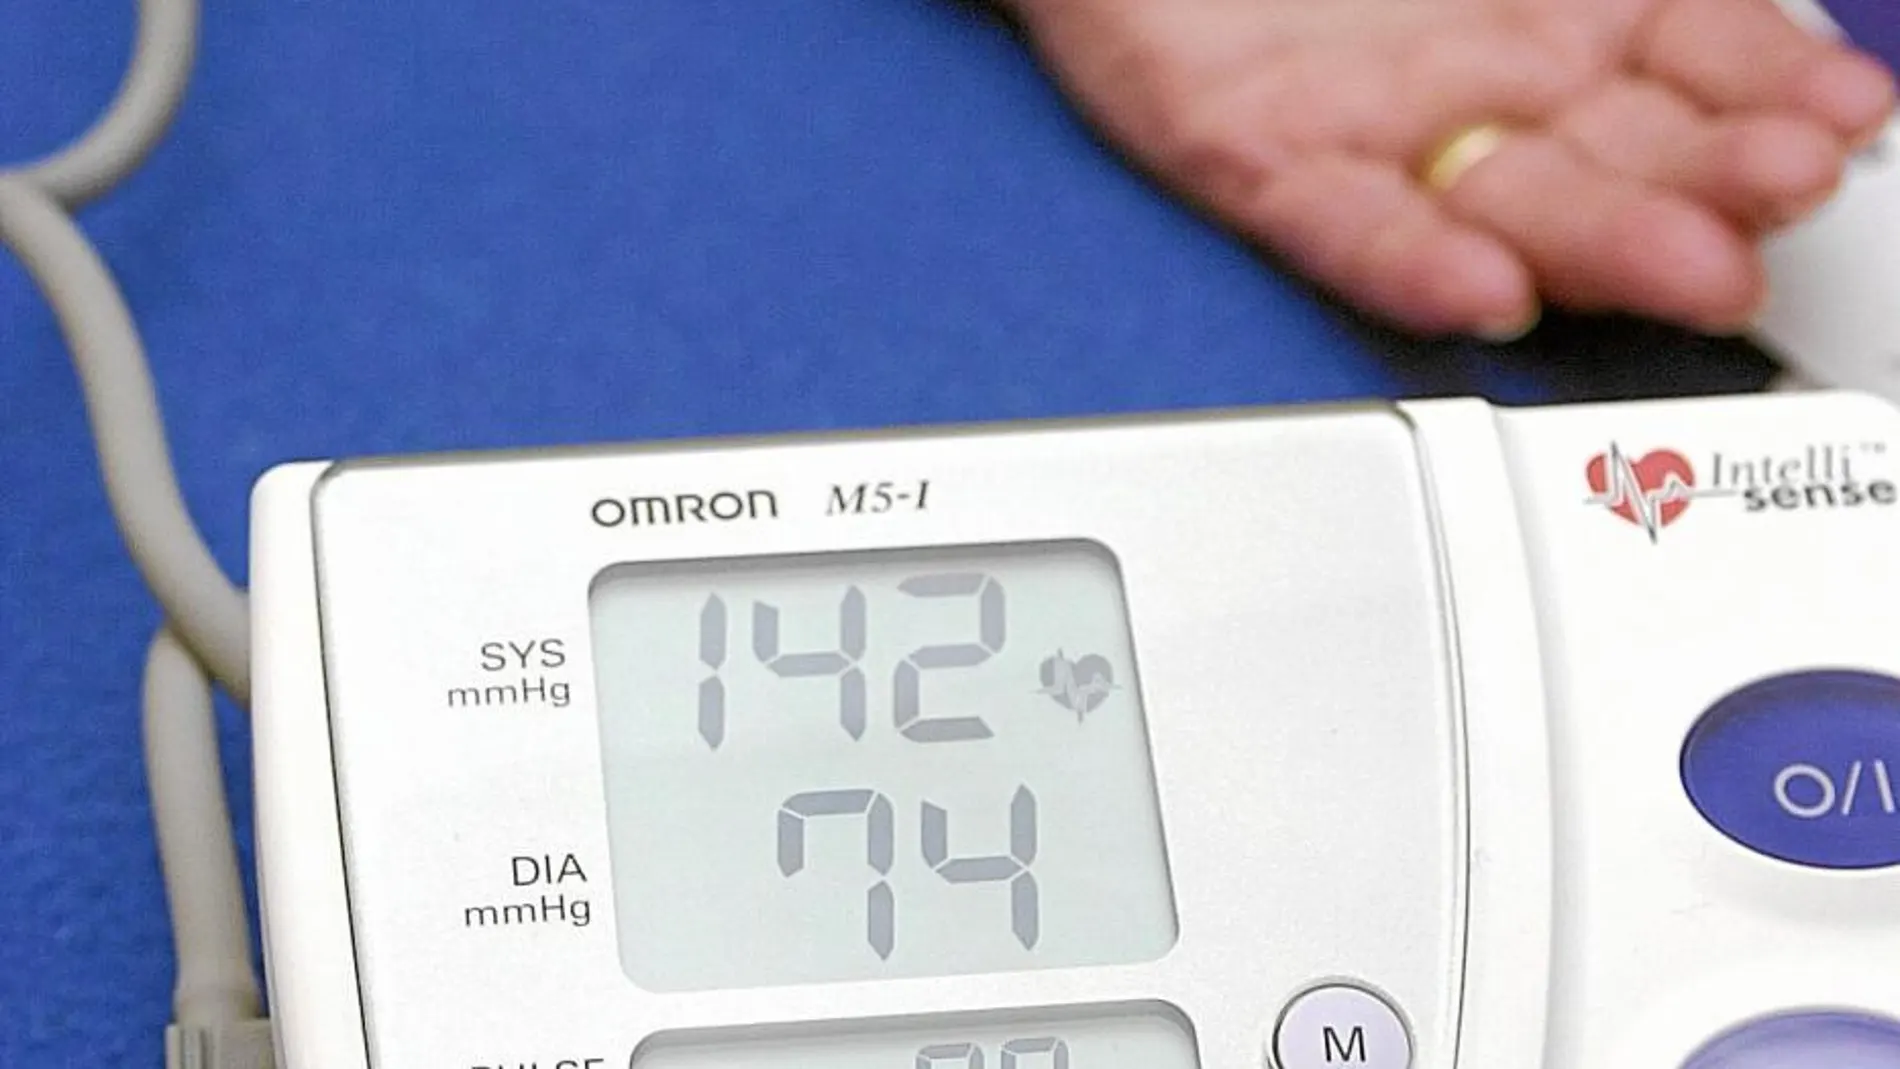 La hipertensión arterial puede mejorarse si se toman una serie de medidas que afectan a nuestro estilo de vida y alimentación